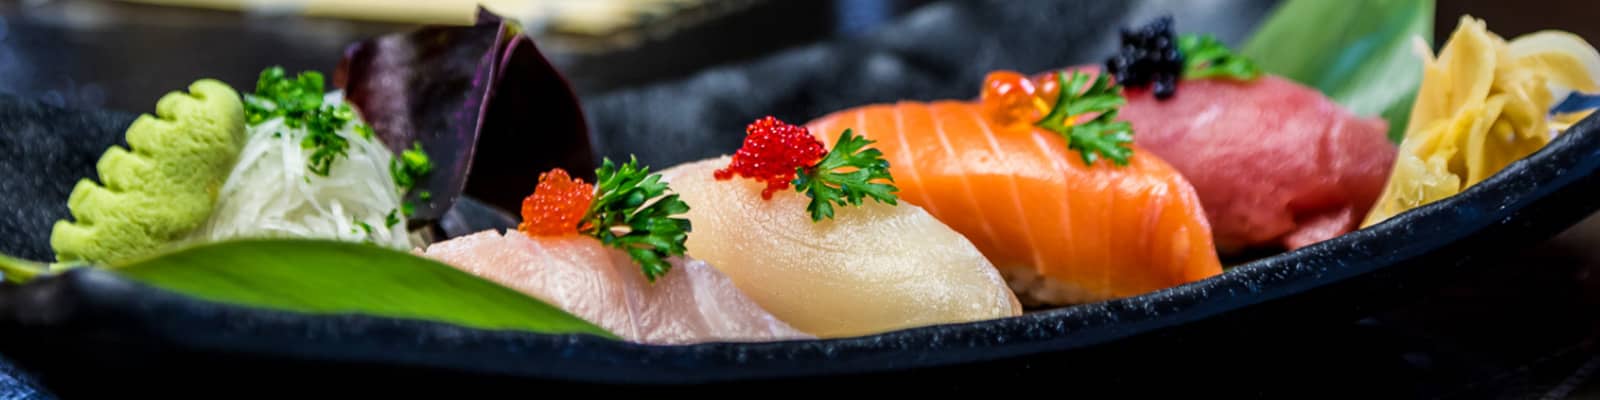 osaka-sushi-restaurant-bonaire-slider-image-5